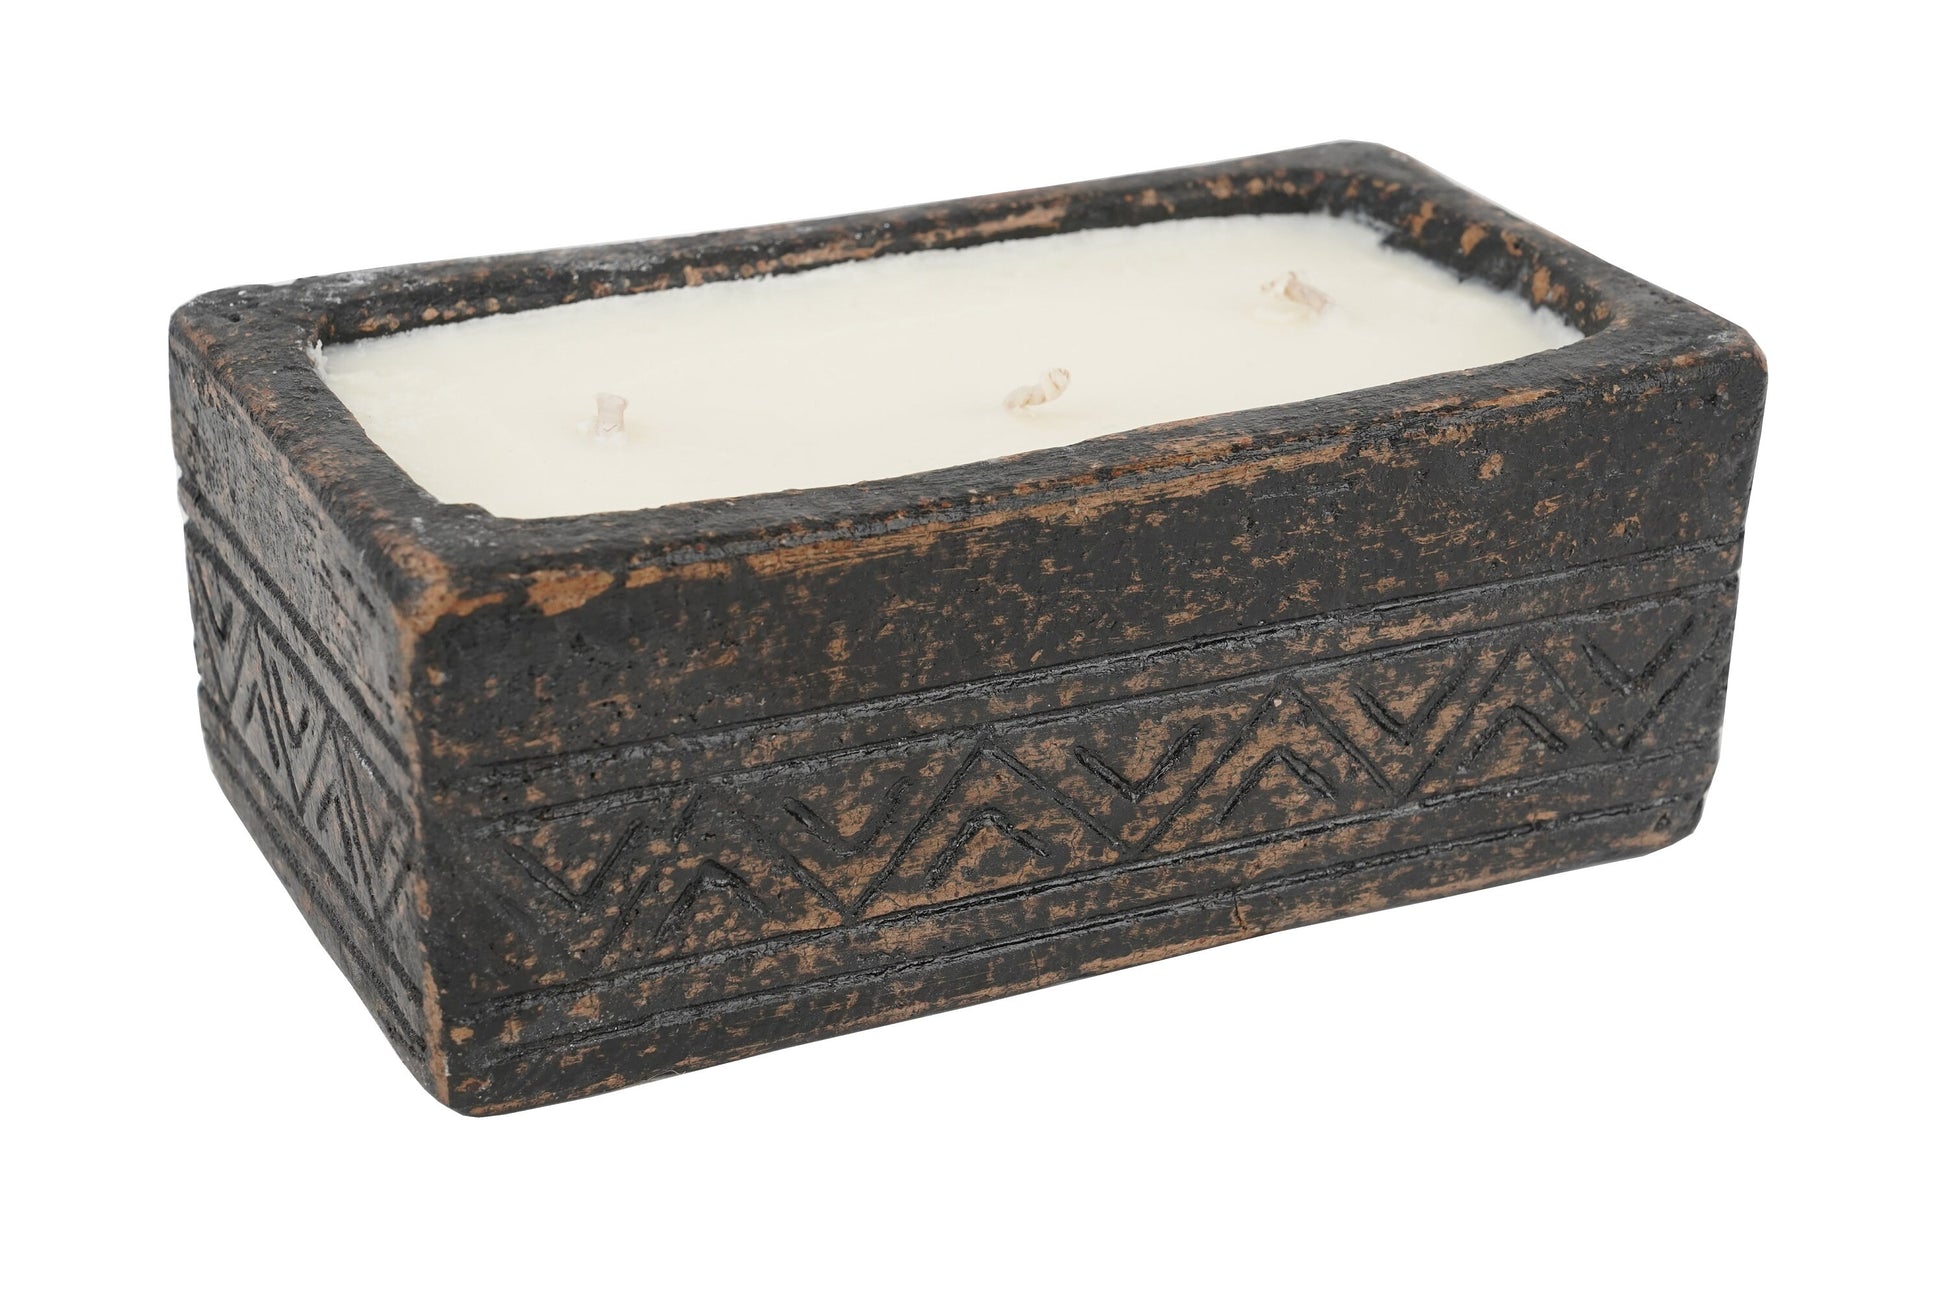 Aztec Candle Handmade Vessel - Exclusive Design